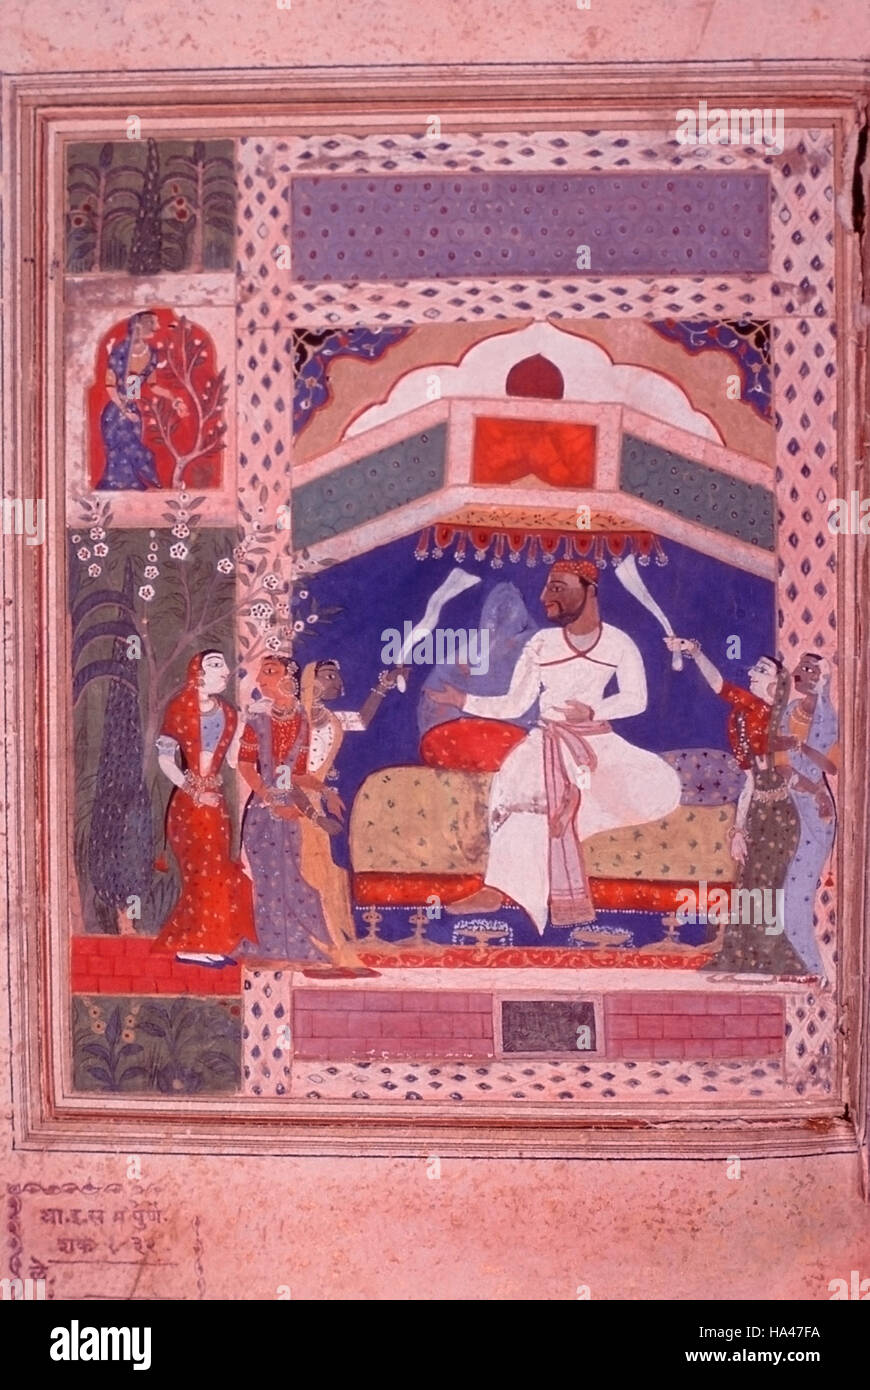 Hussain Shah sur trône. Peinture de la Tarif i-Husayn Shahi, un compte poétique du chef de Ahmednagar - Husayn Nizam Shah I. Date : 1565 A.D Banque D'Images